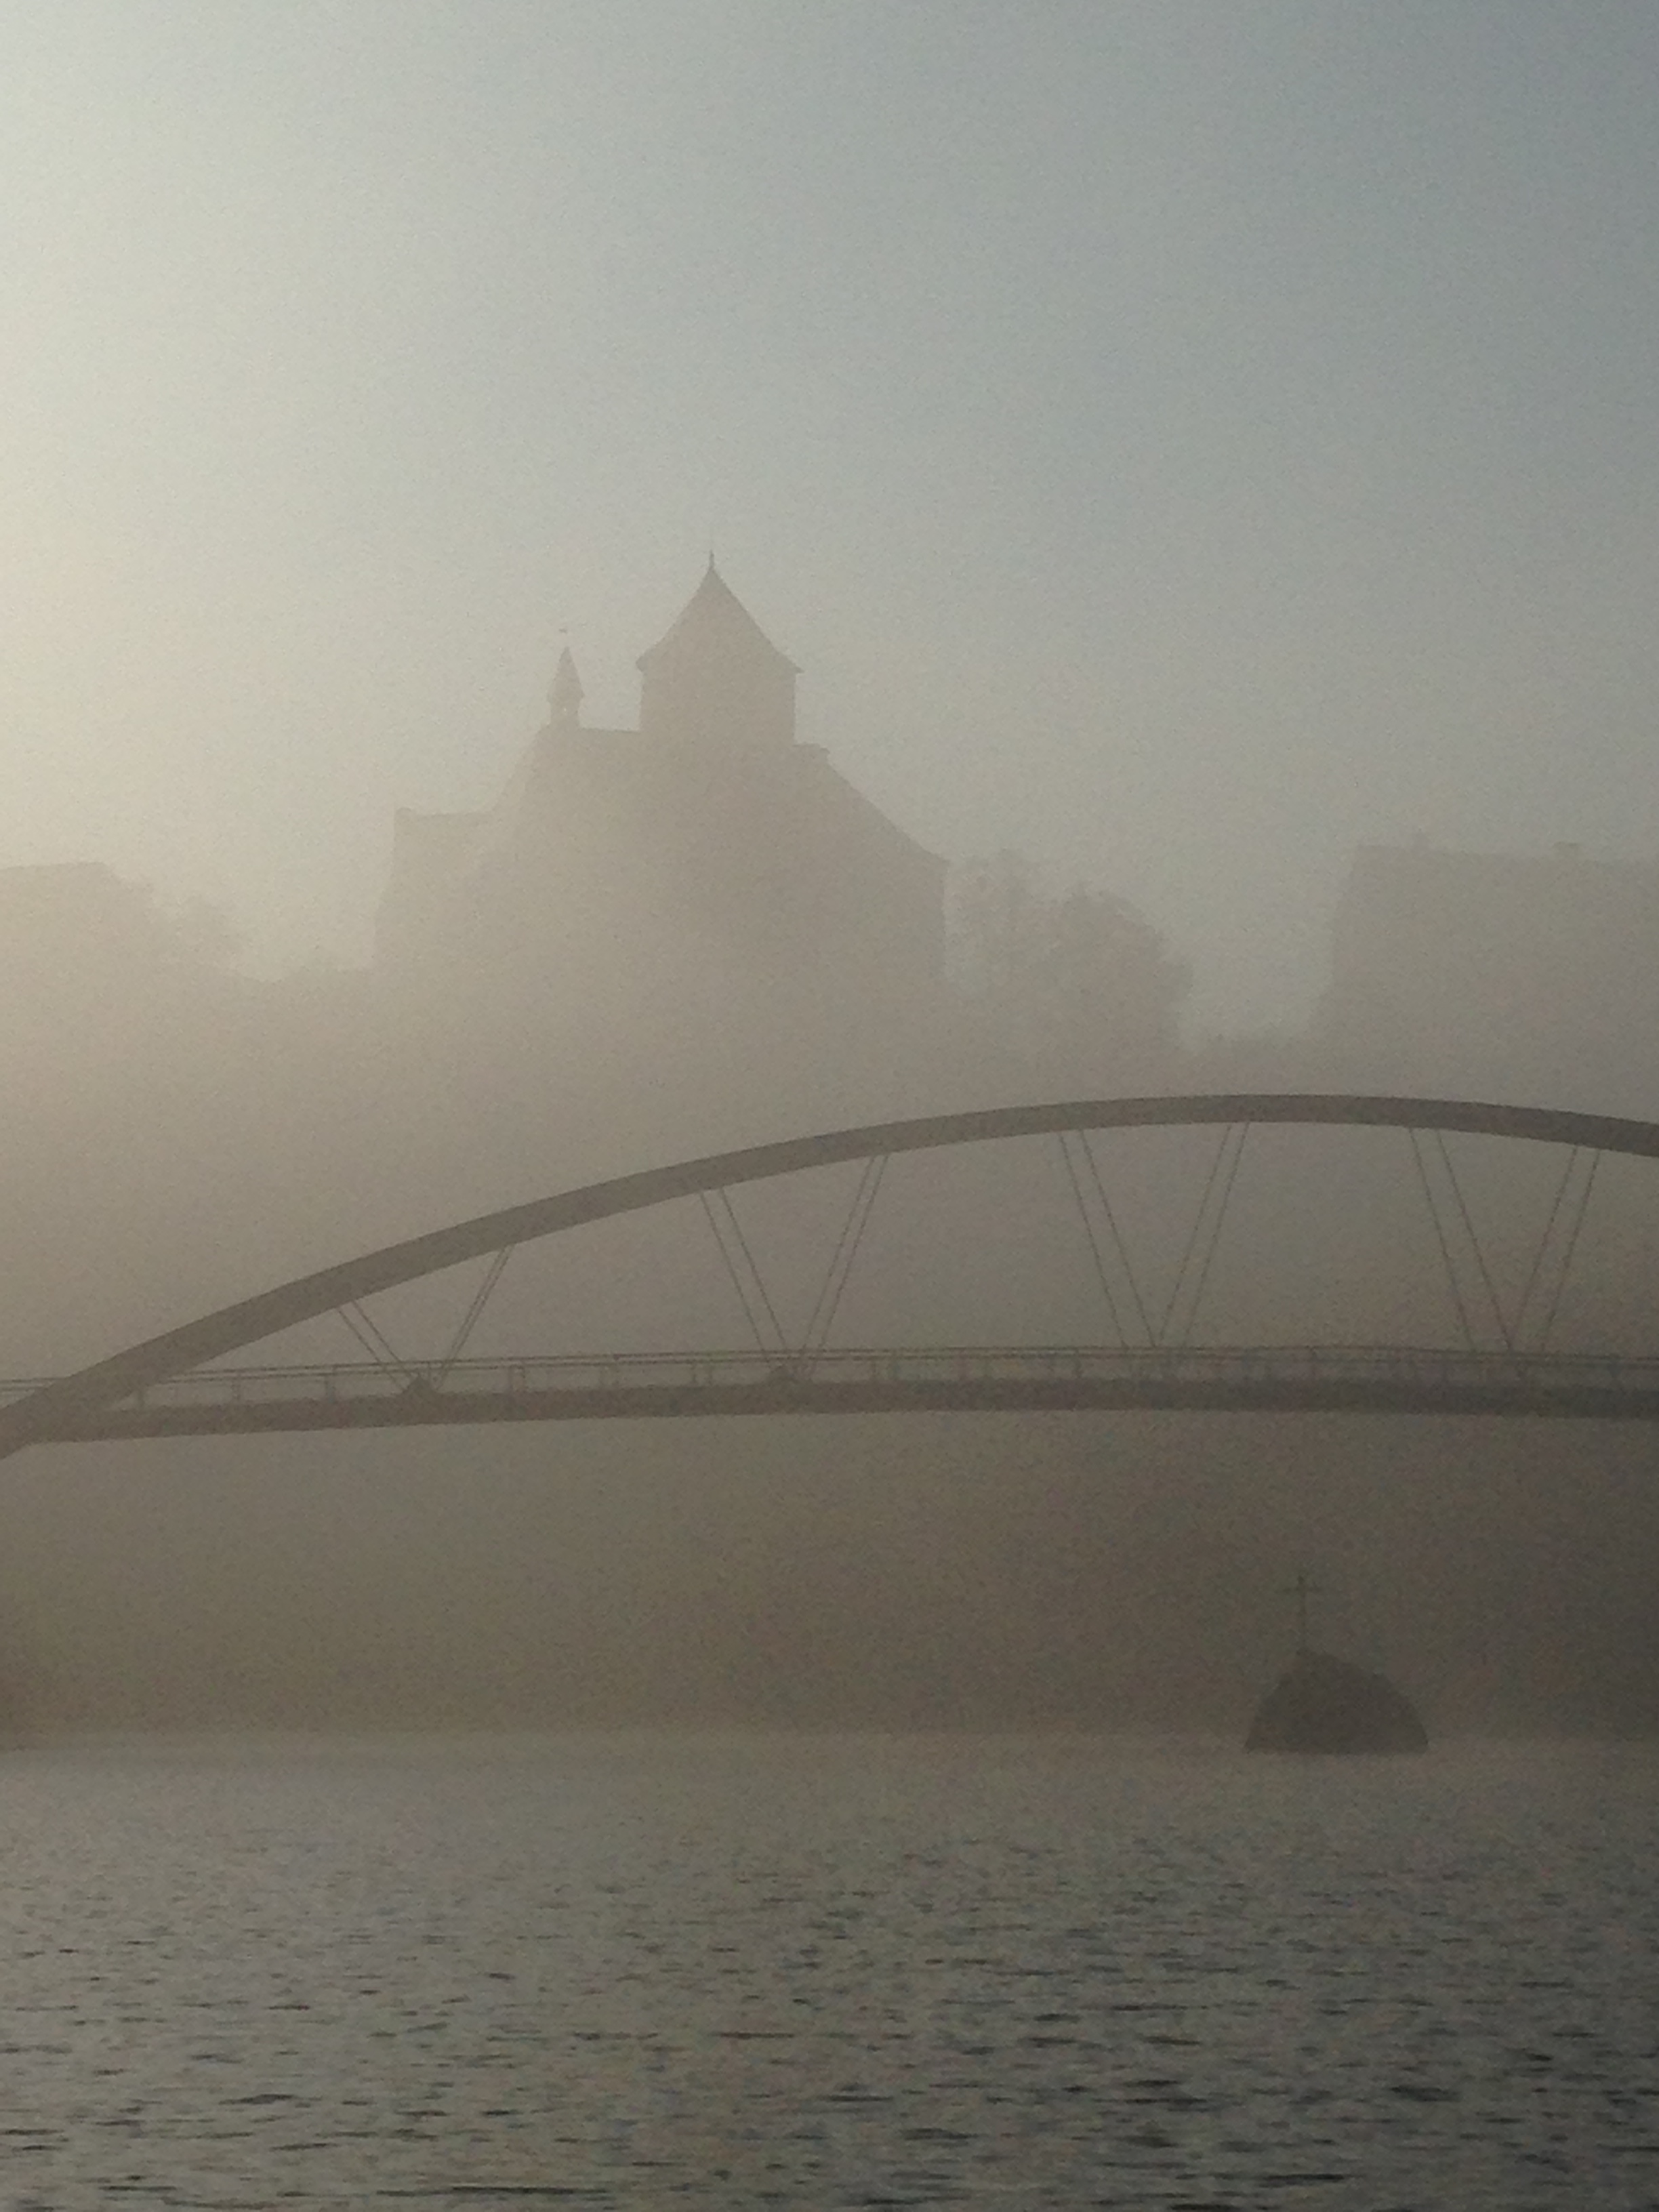 Veveří castle in the mist